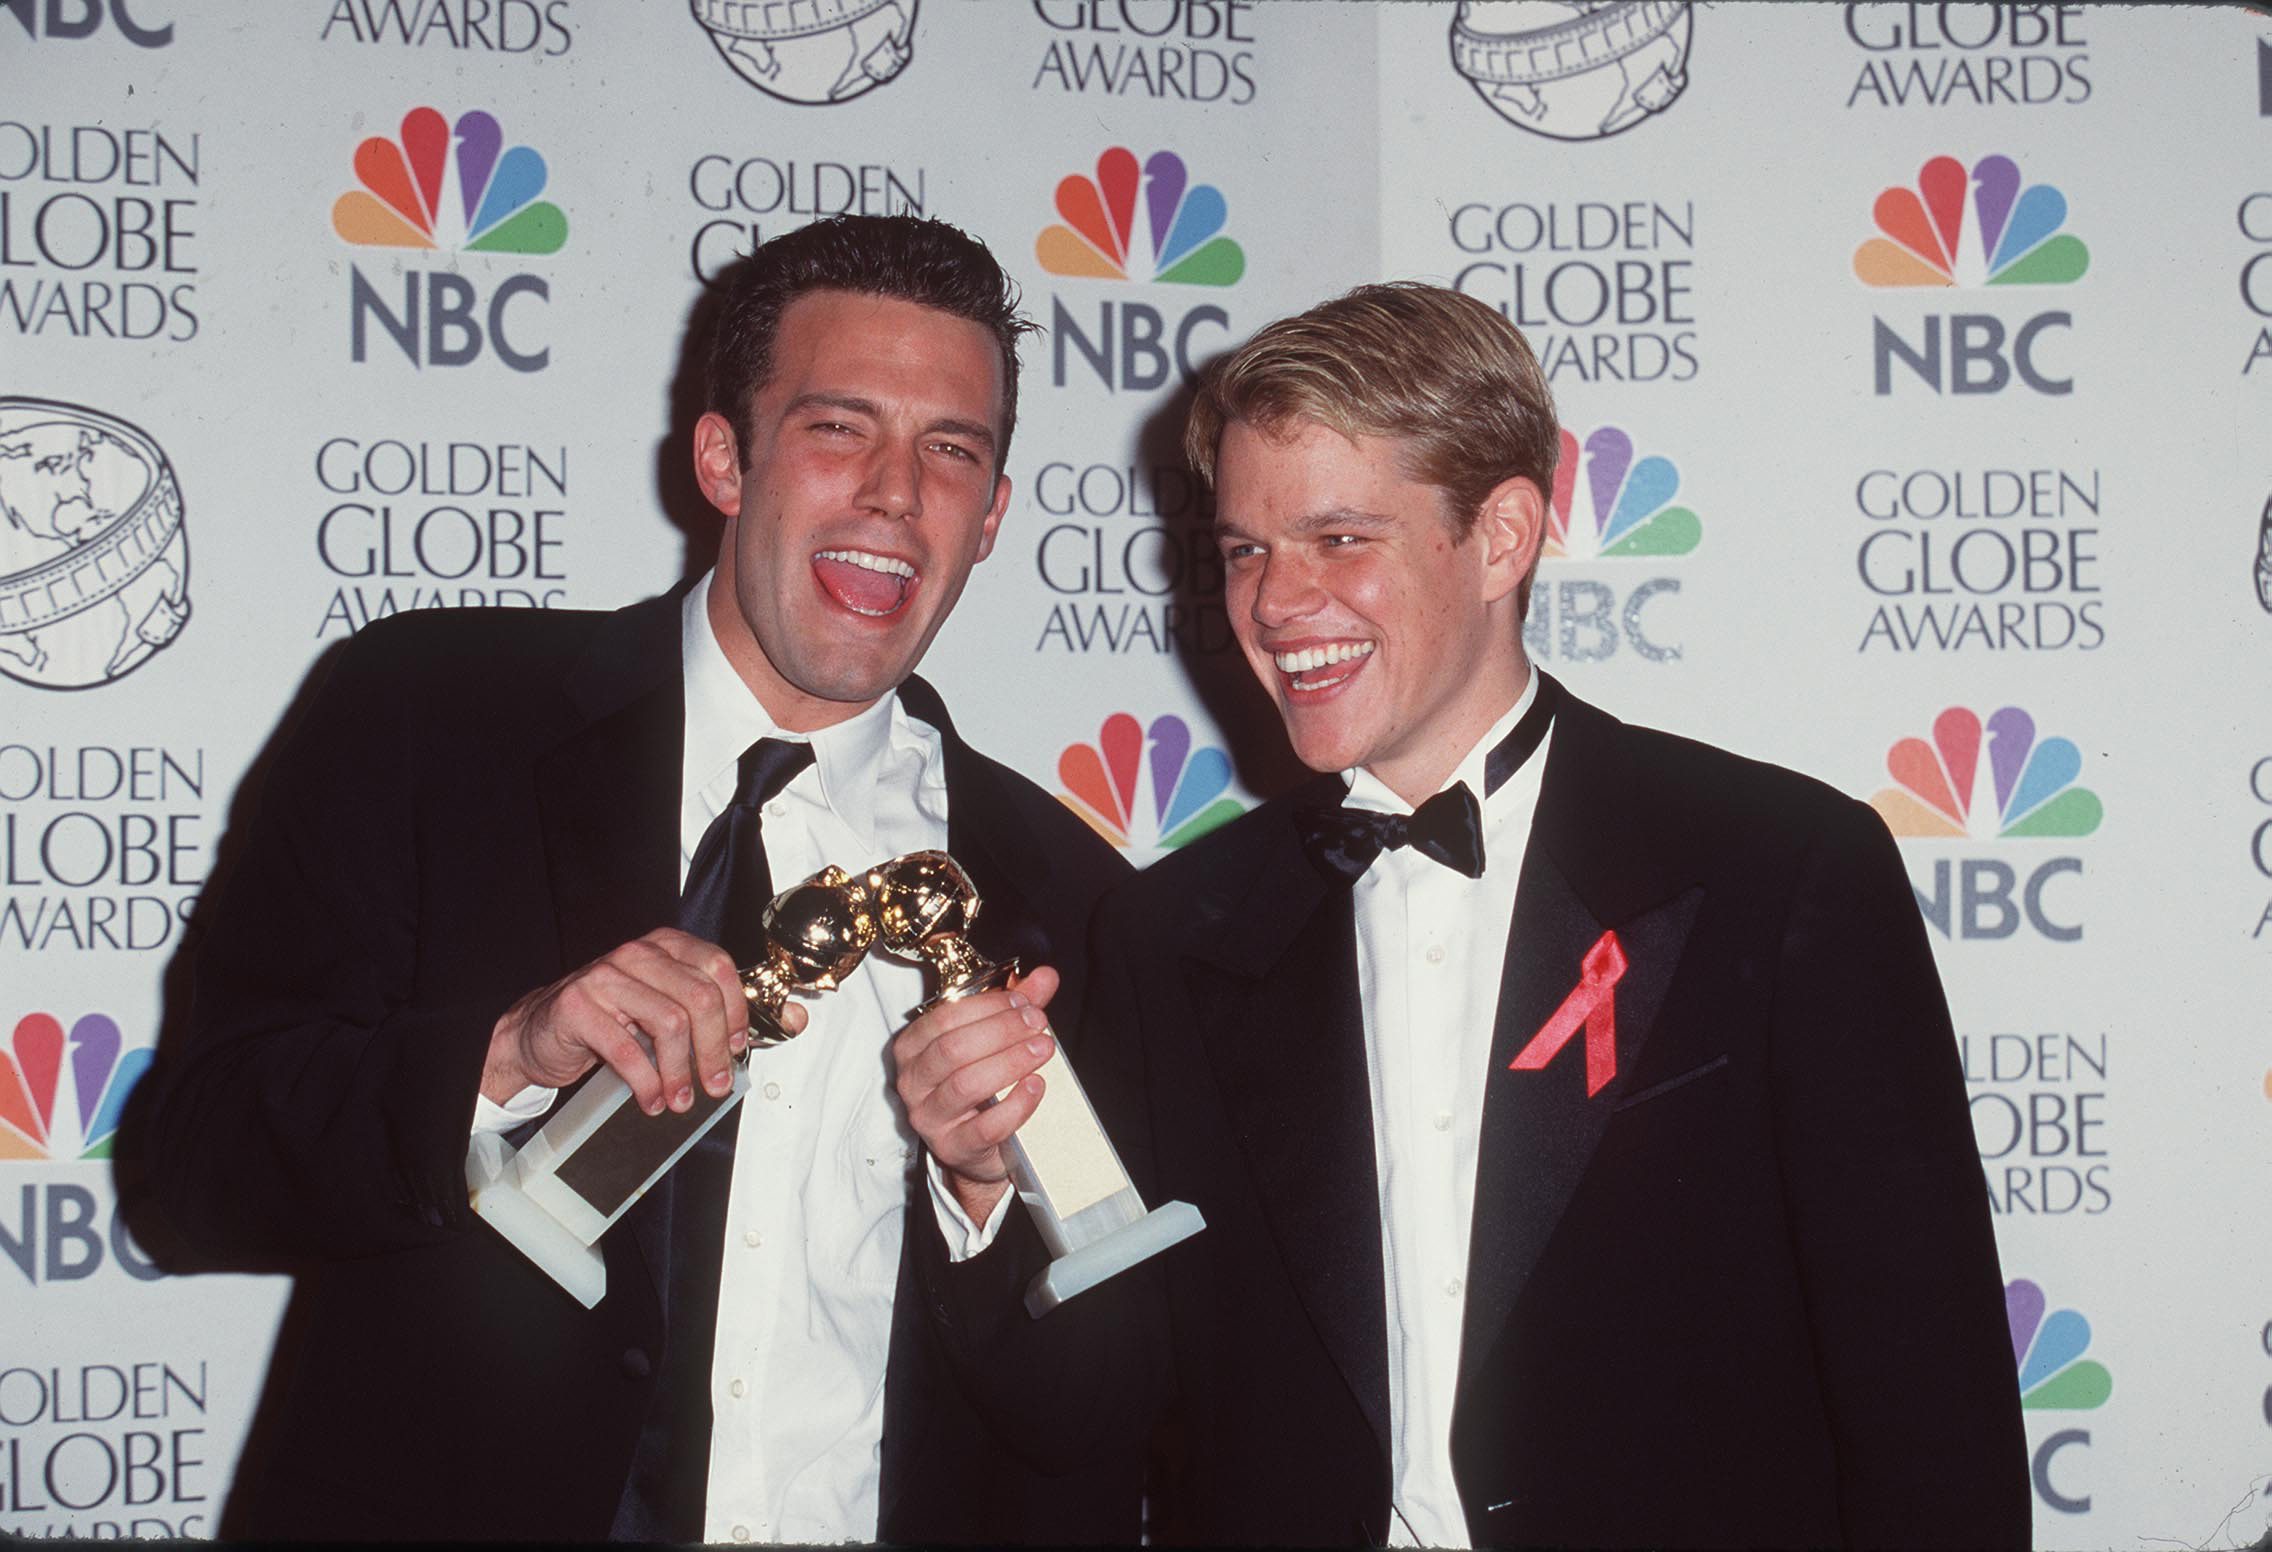 Ben and Matt holding their Golden Globes